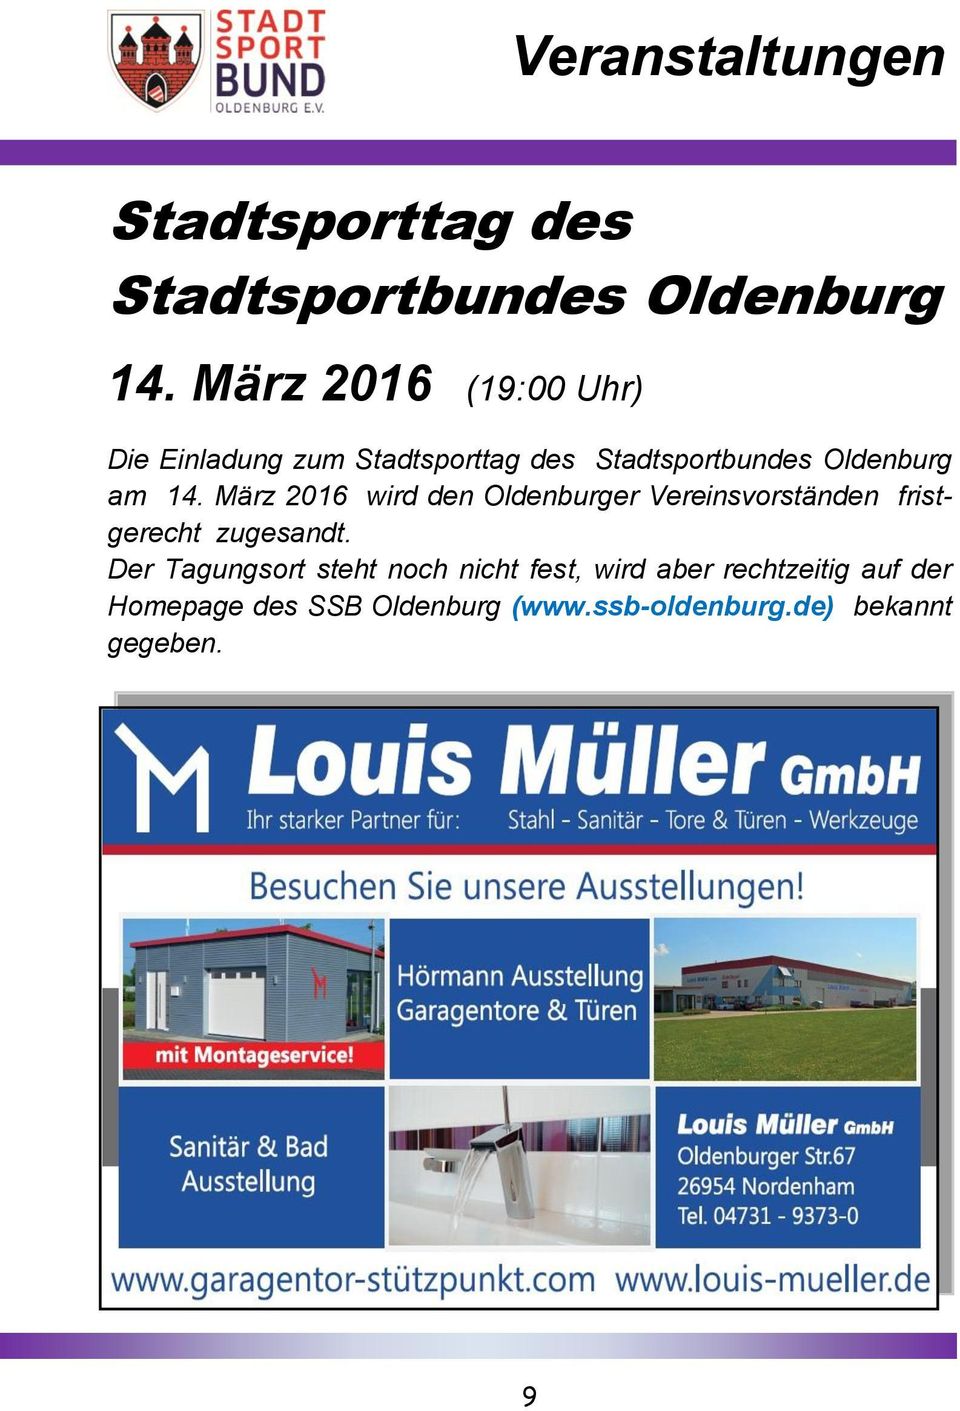 März 2016 wird den Oldenburger Vereinsvorständen fristgerecht zugesandt.